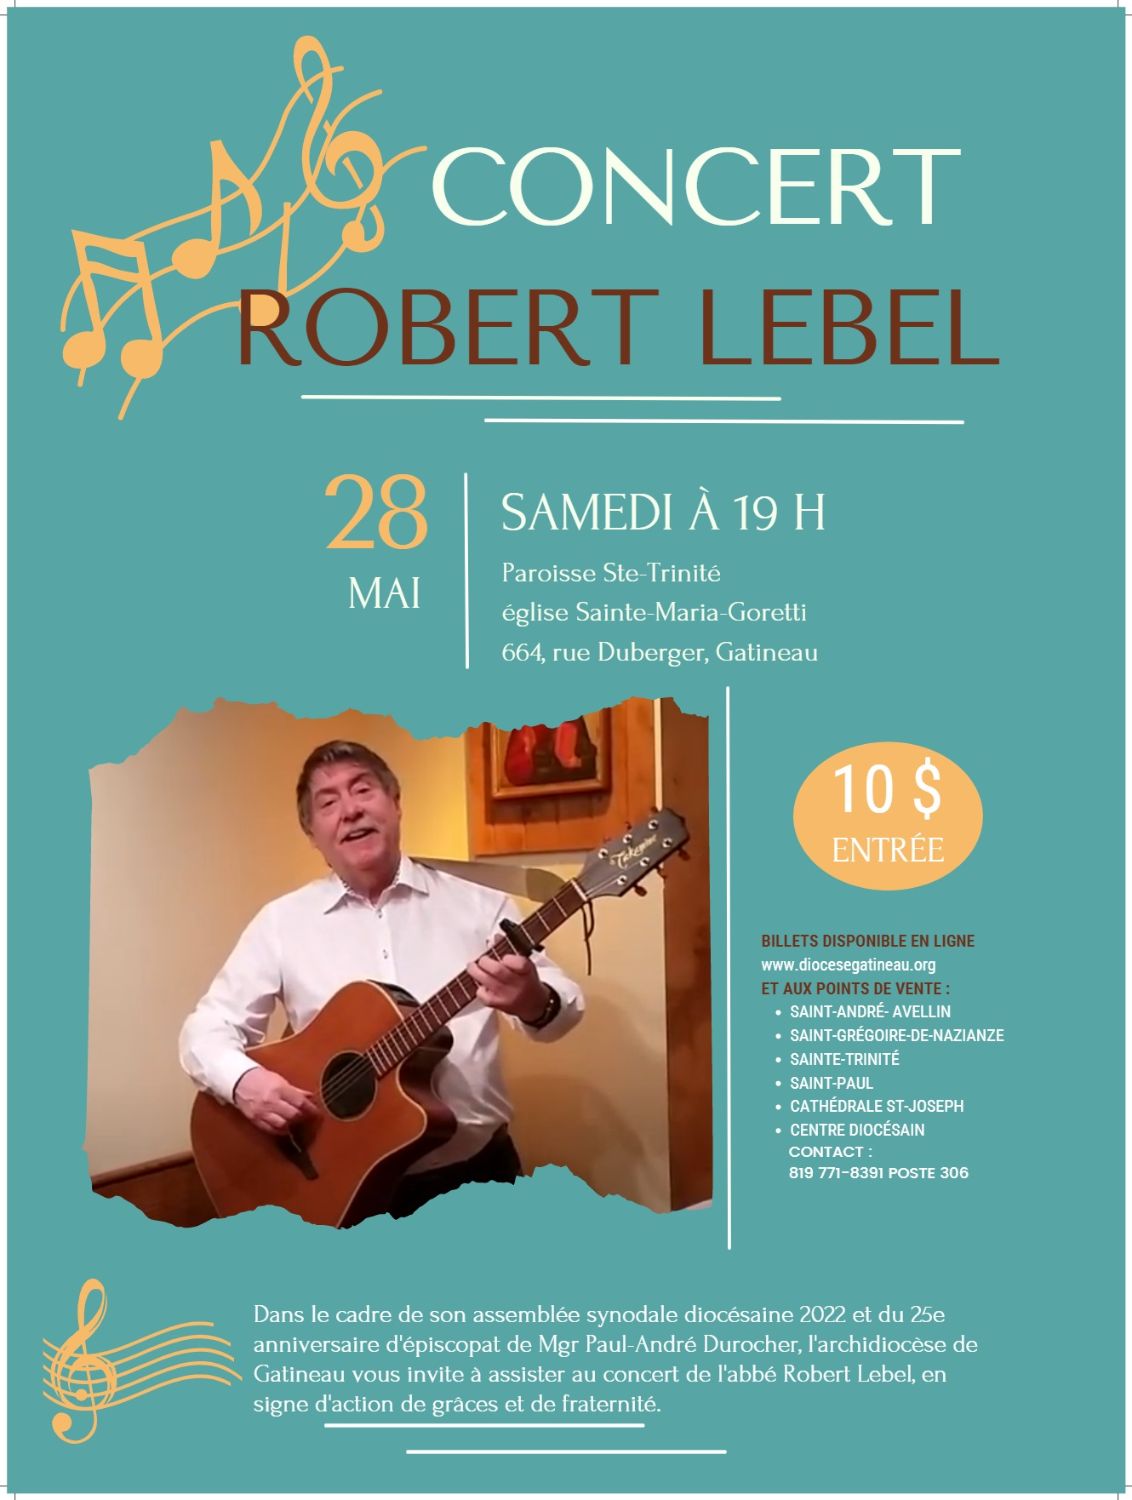 Robert Lebel en concert